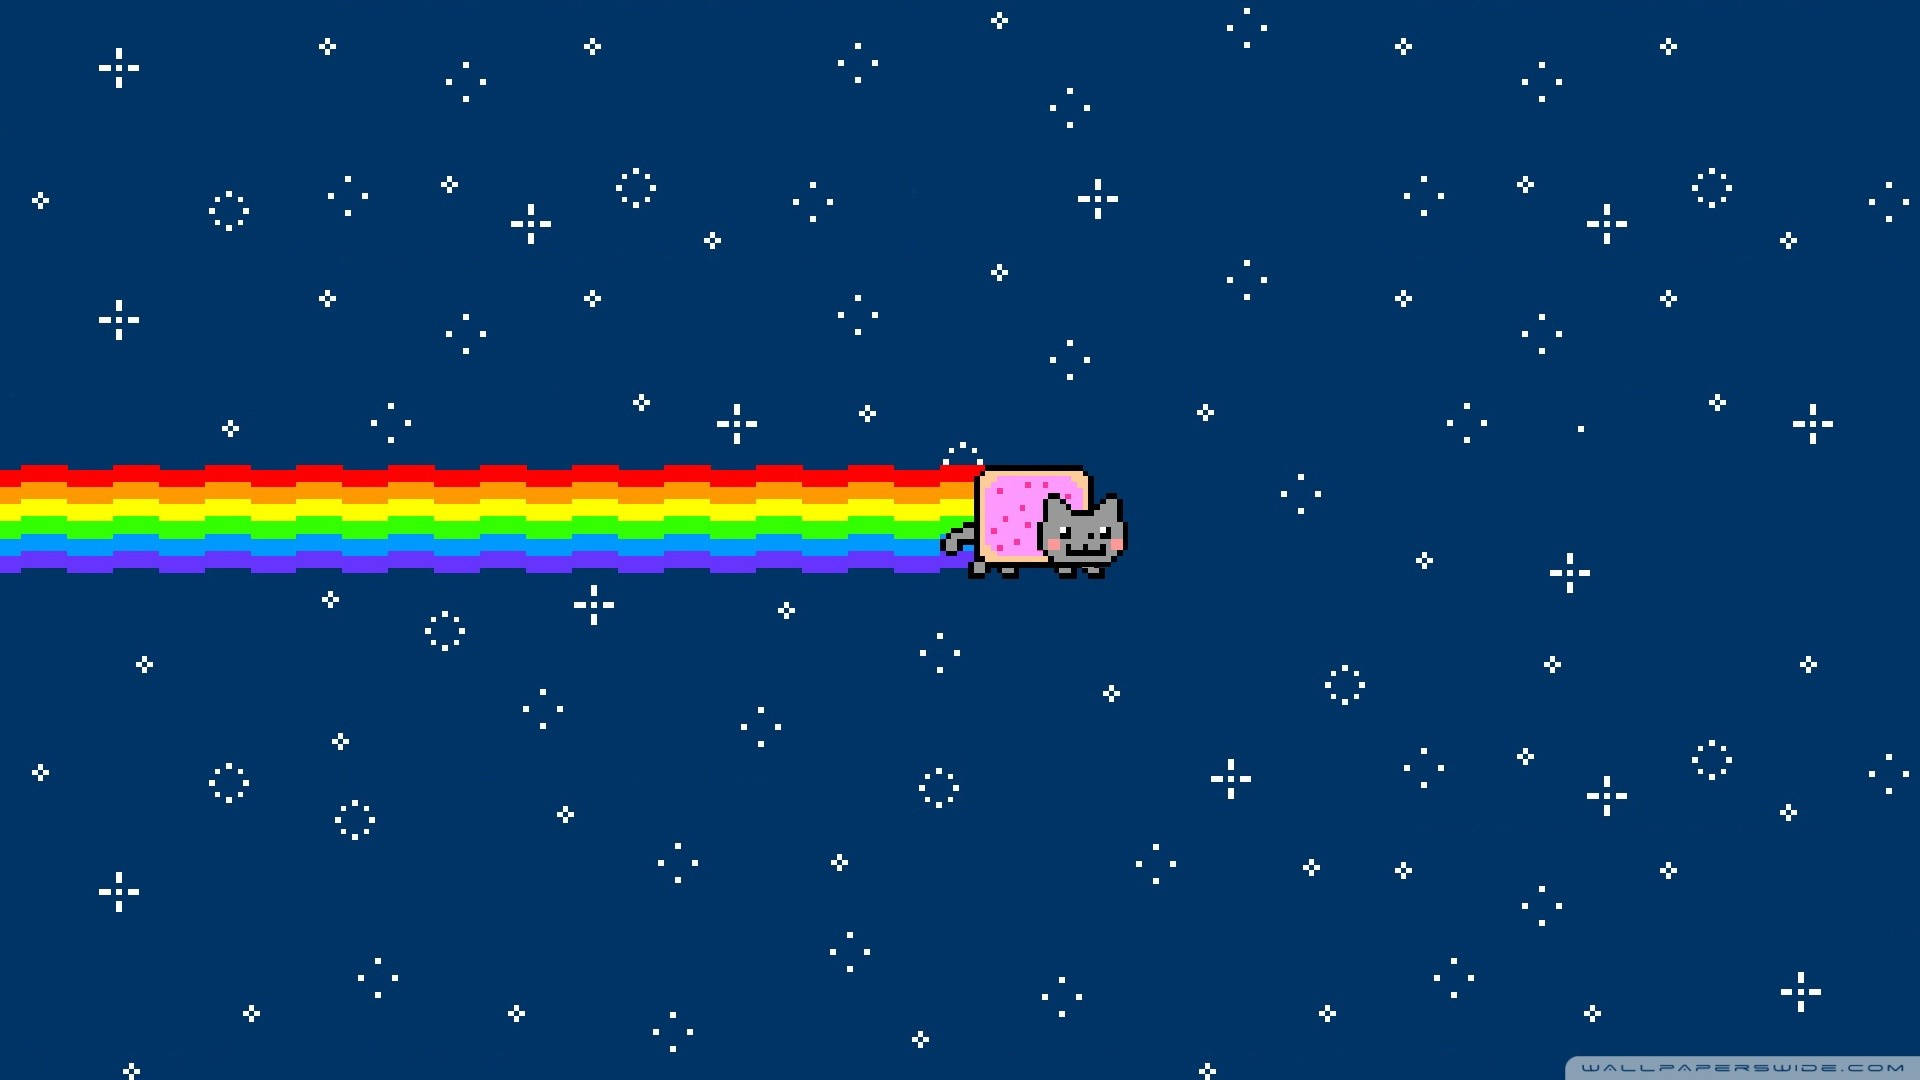 Nyan Cat Flying Through Space